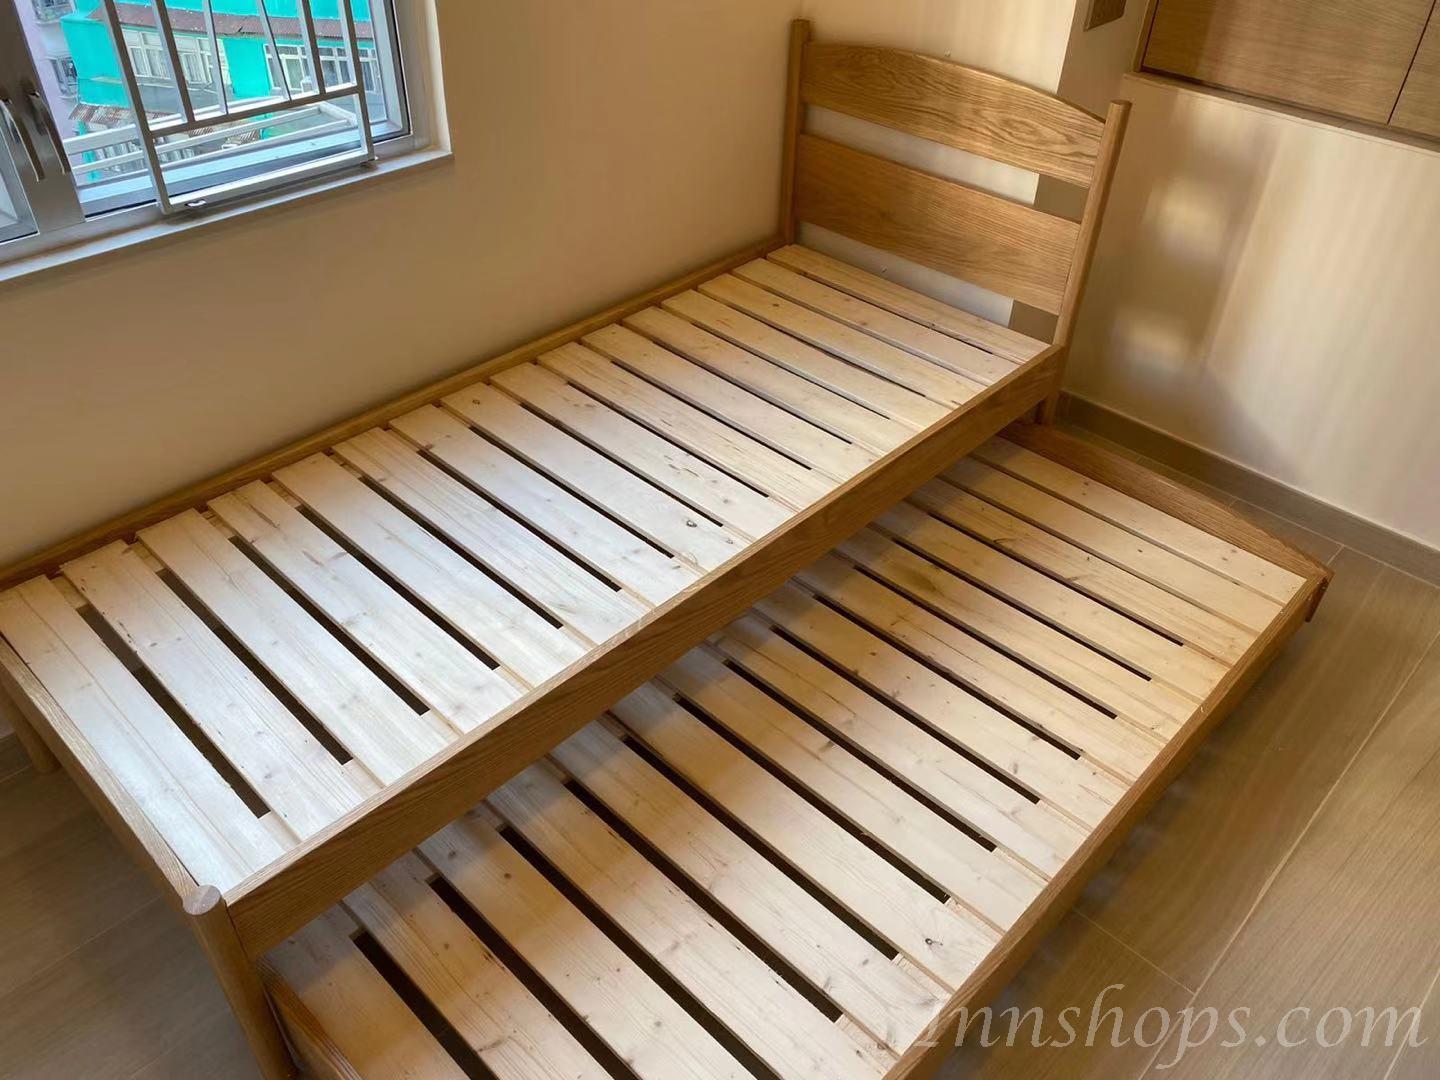 北歐實木系列 白橡木子母床 小朋友床 *可訂造呎吋(不包床褥) (IS6539)